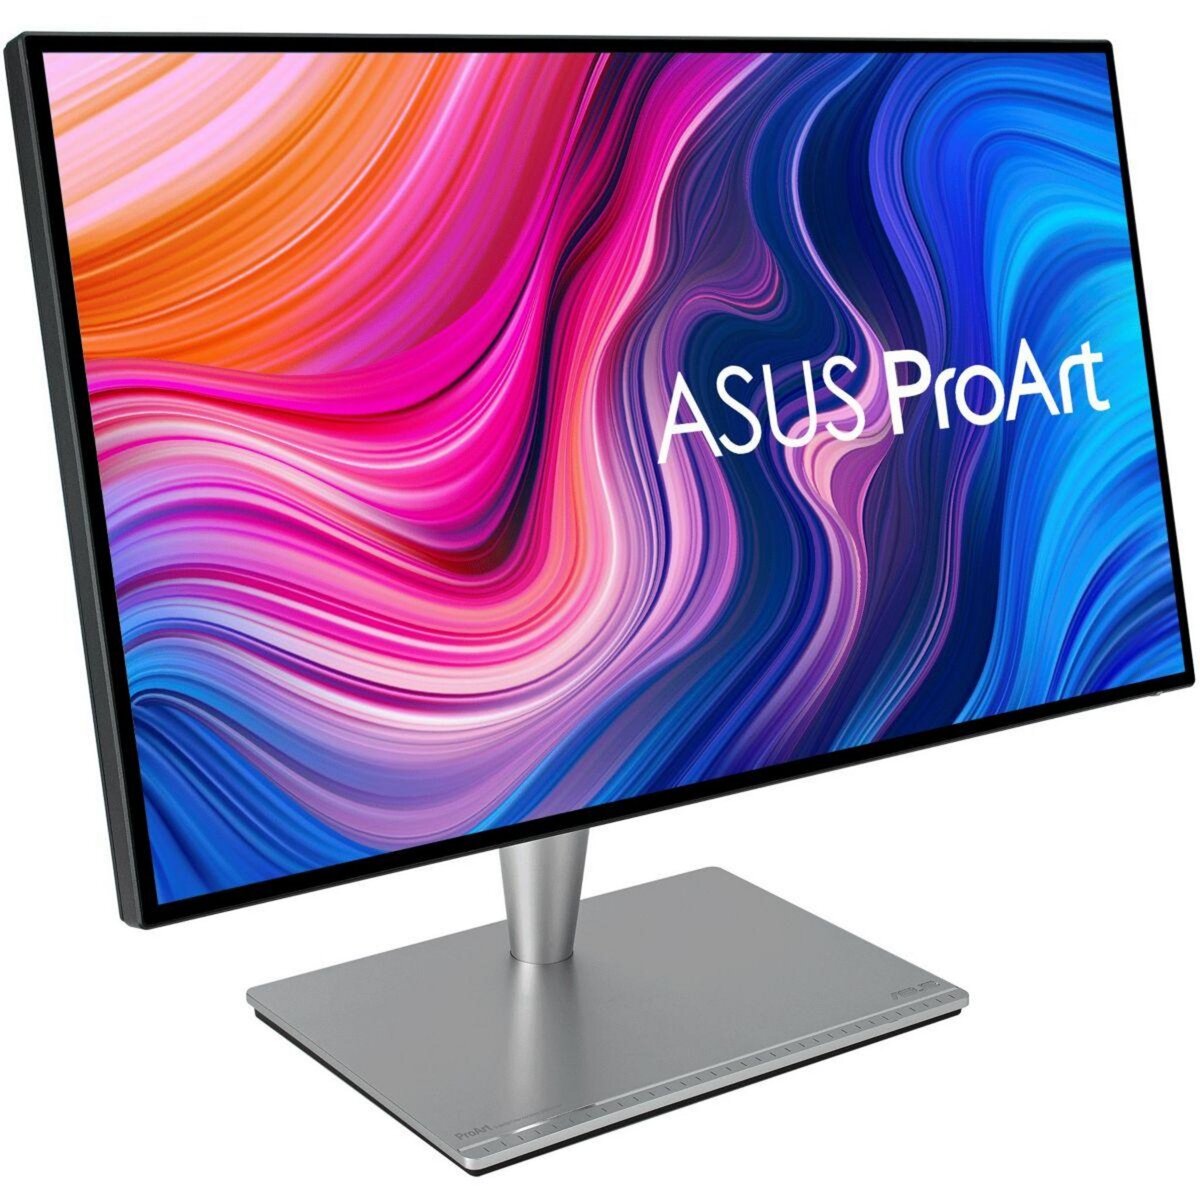 ASUS Ecran PC ProArt pas cher 